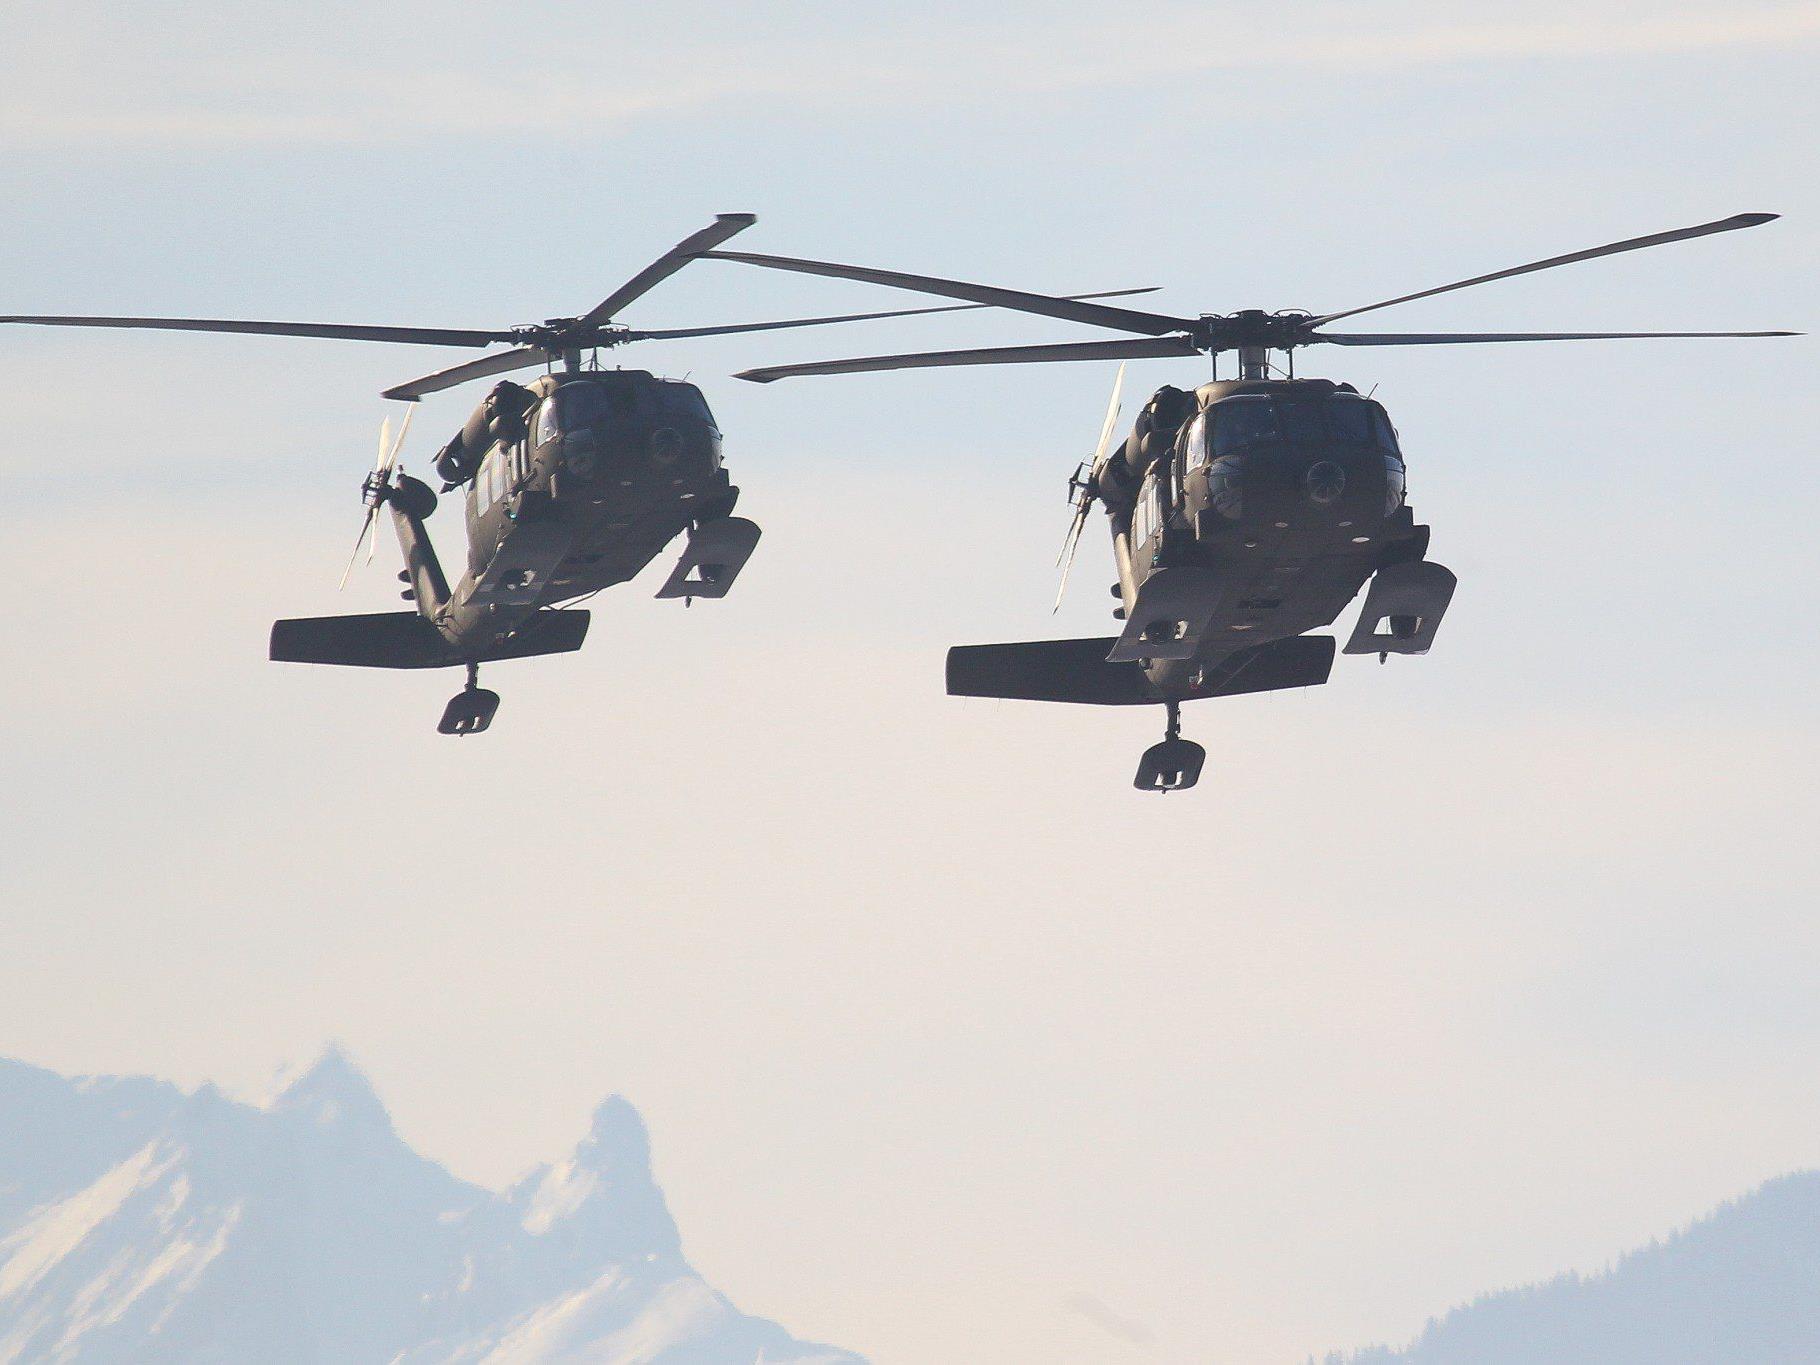 Glück für einen schwer verletzten Skifahrer - nur ein Hubschrauber des Bundesheers war frei.